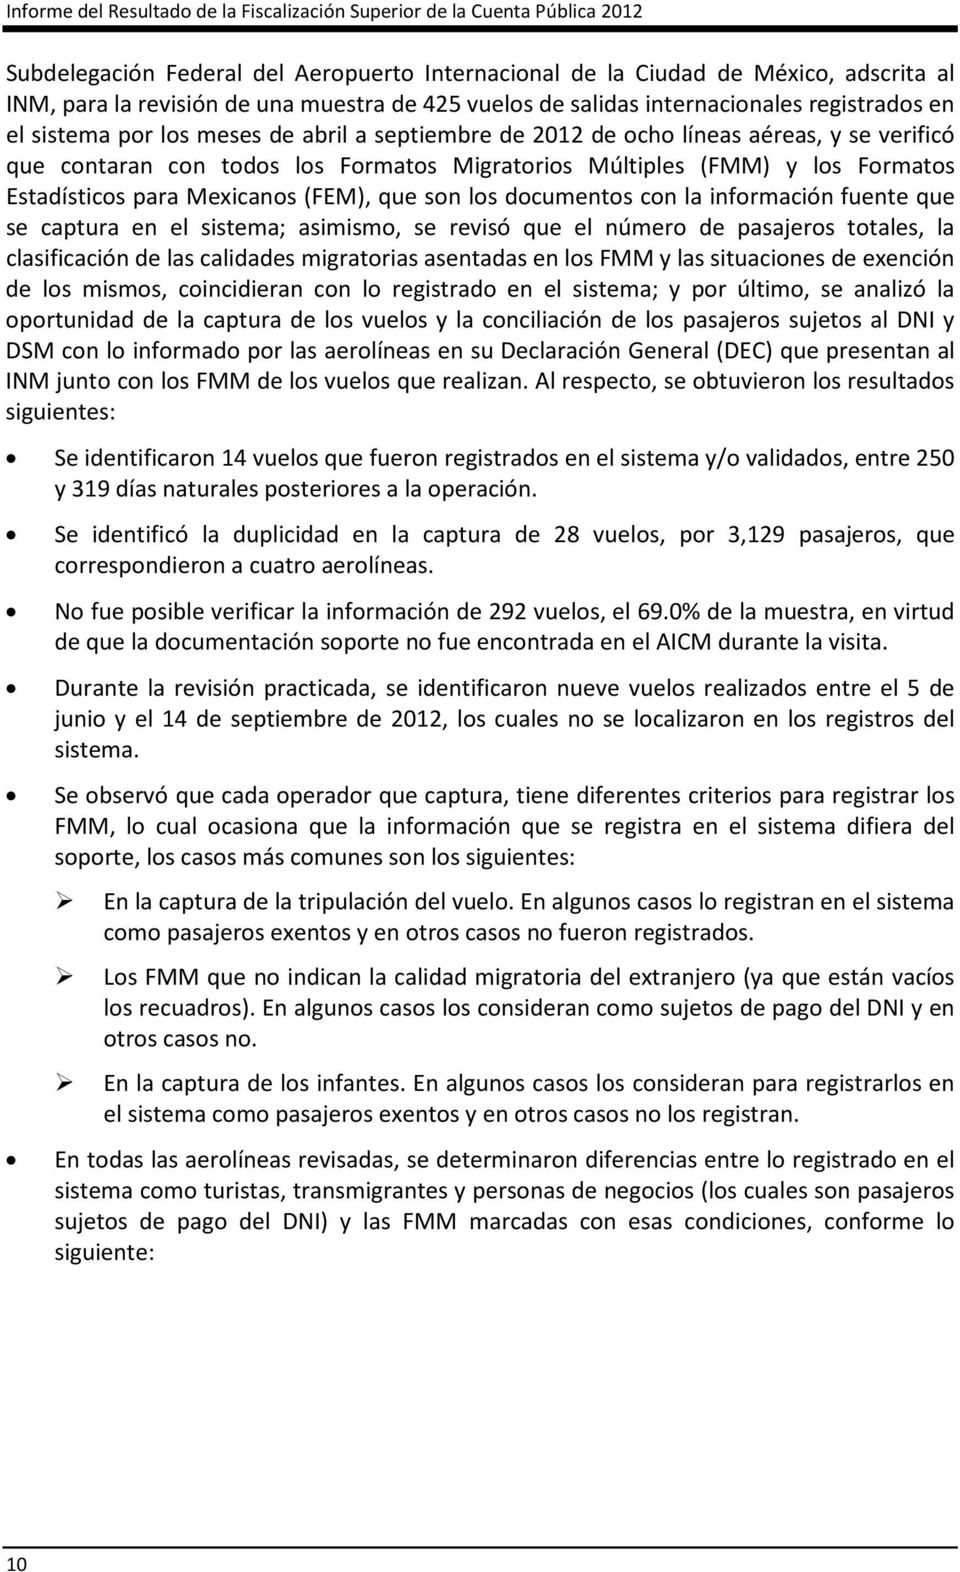 Migratorios Múltiples (FMM) y los Formatos Estadísticos para Mexicanos (FEM), que son los documentos con la información fuente que se captura en el sistema; asimismo, se revisó que el número de